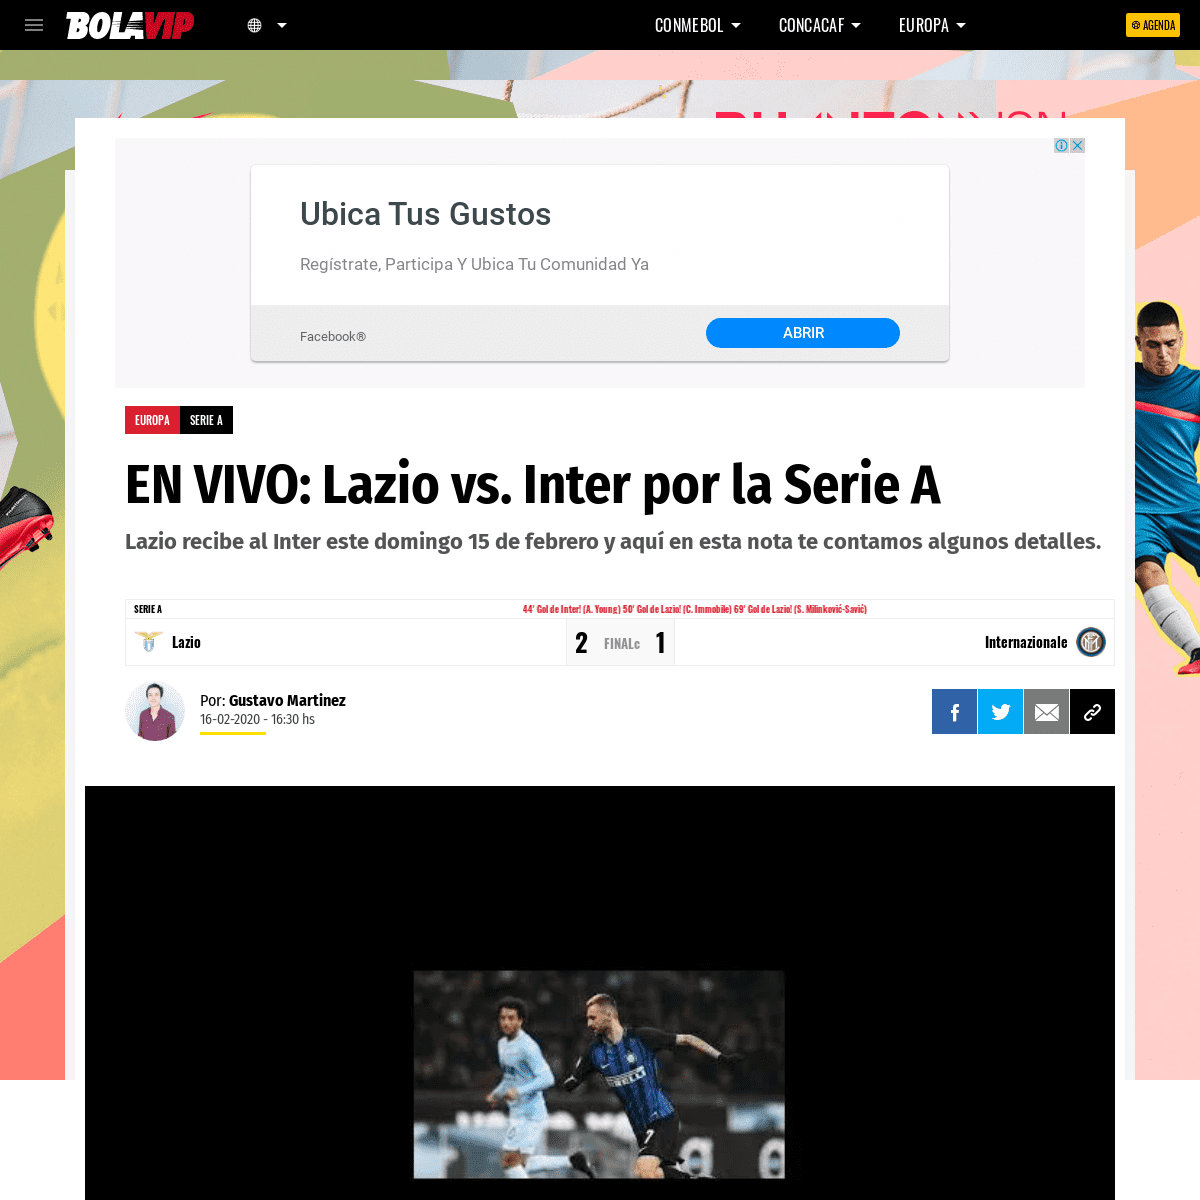 A complete backup of bolavip.com/europa/EN-VIVO-Lazio-vs.-Inter-por-la-Serie-A-F22-20200215-0117.html